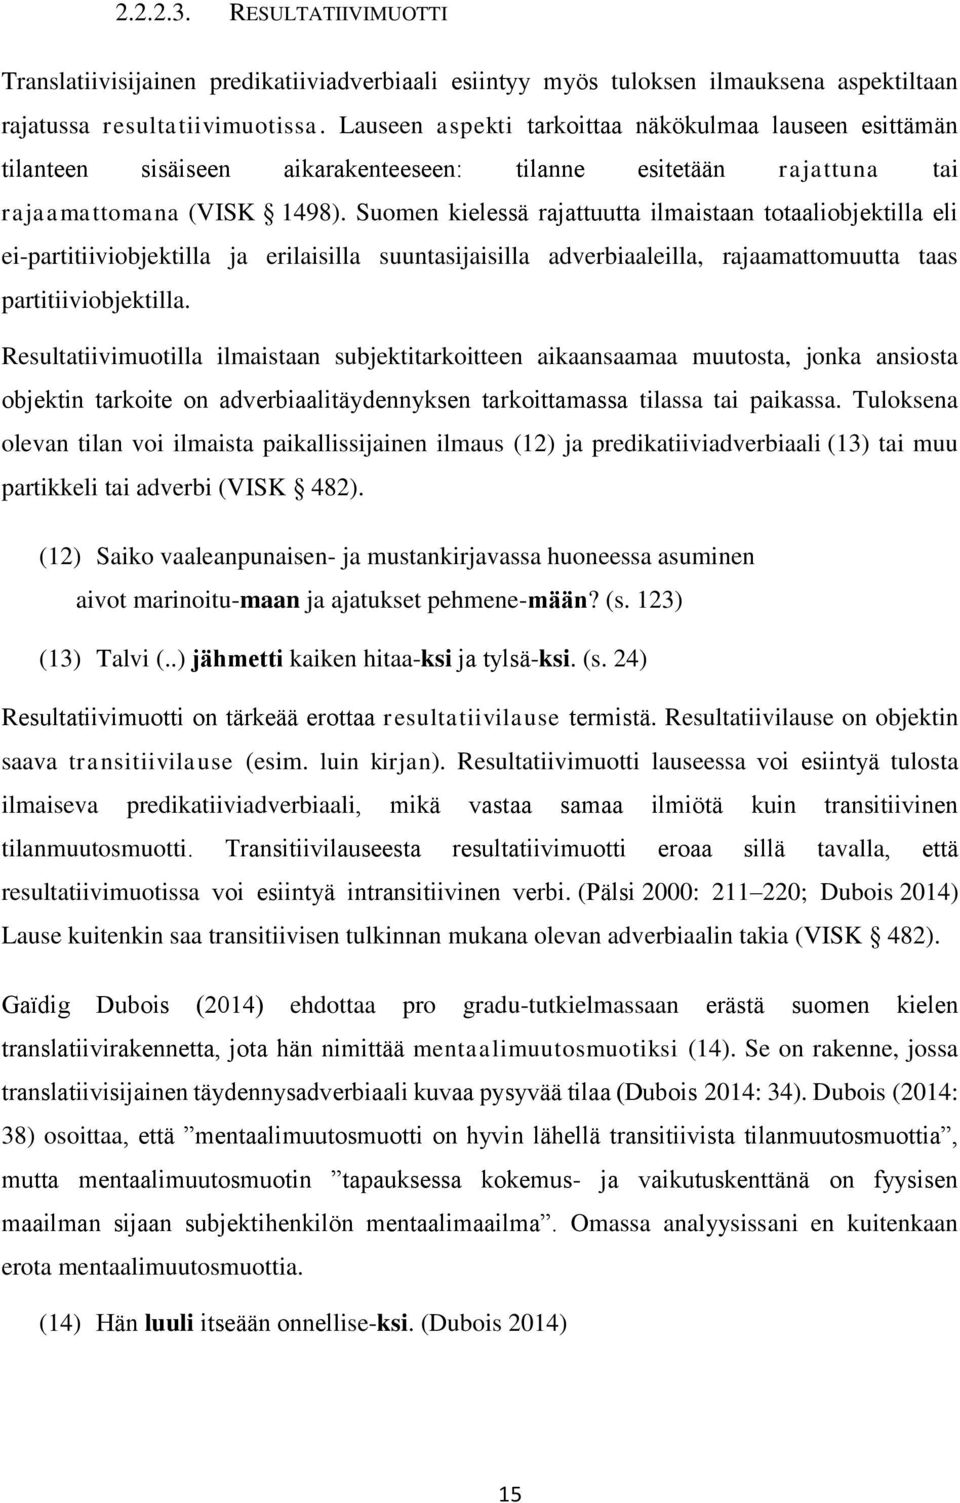 Suomen kielessä rajattuutta ilmaistaan totaaliobjektilla eli ei-partitiiviobjektilla ja erilaisilla suuntasijaisilla adverbiaaleilla, rajaamattomuutta taas partitiiviobjektilla.